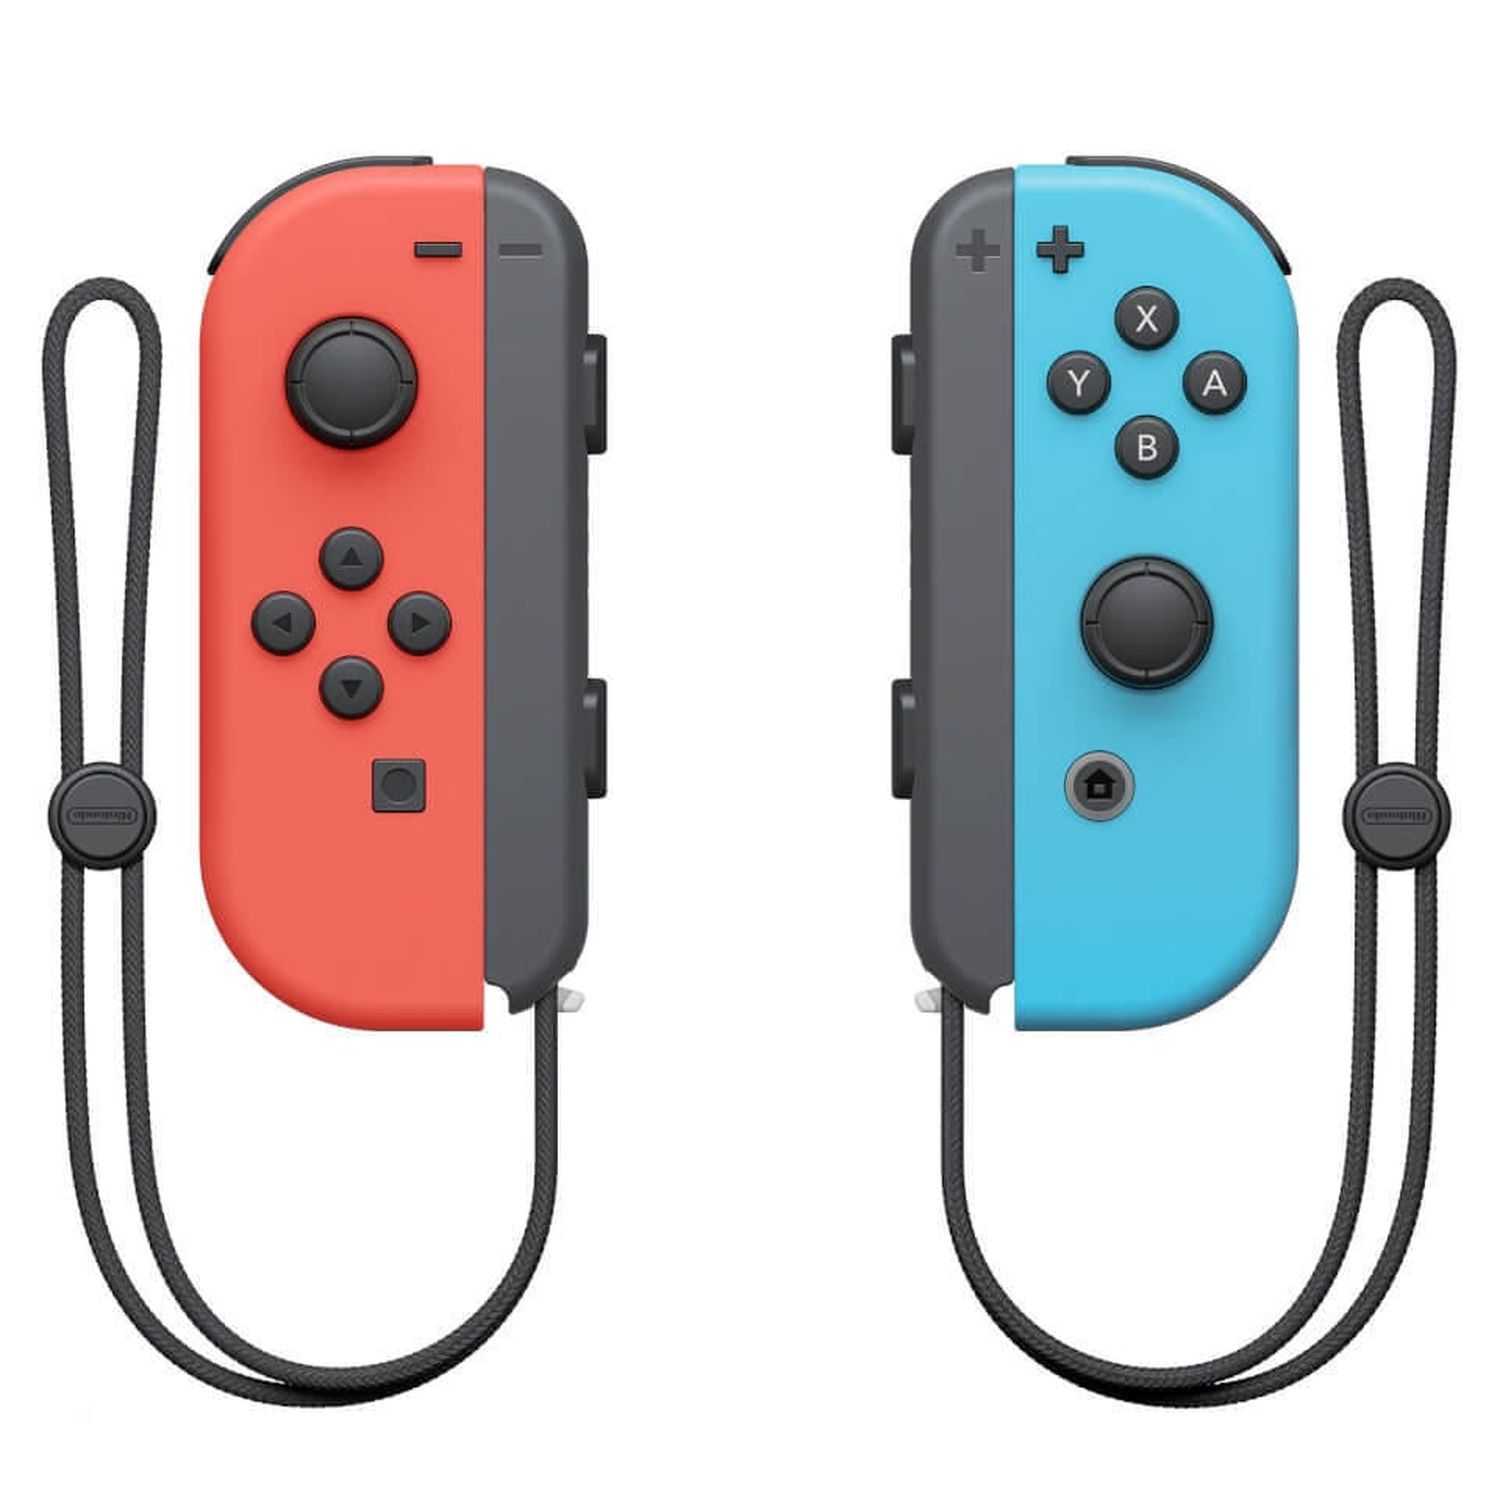 NINTENDO Console Nintendo Switch Joy-Con Bleu et Rouge + Animal Crossing:  New Horizons + Pack 9 Accessoires Exclusivité Auchan pas cher 